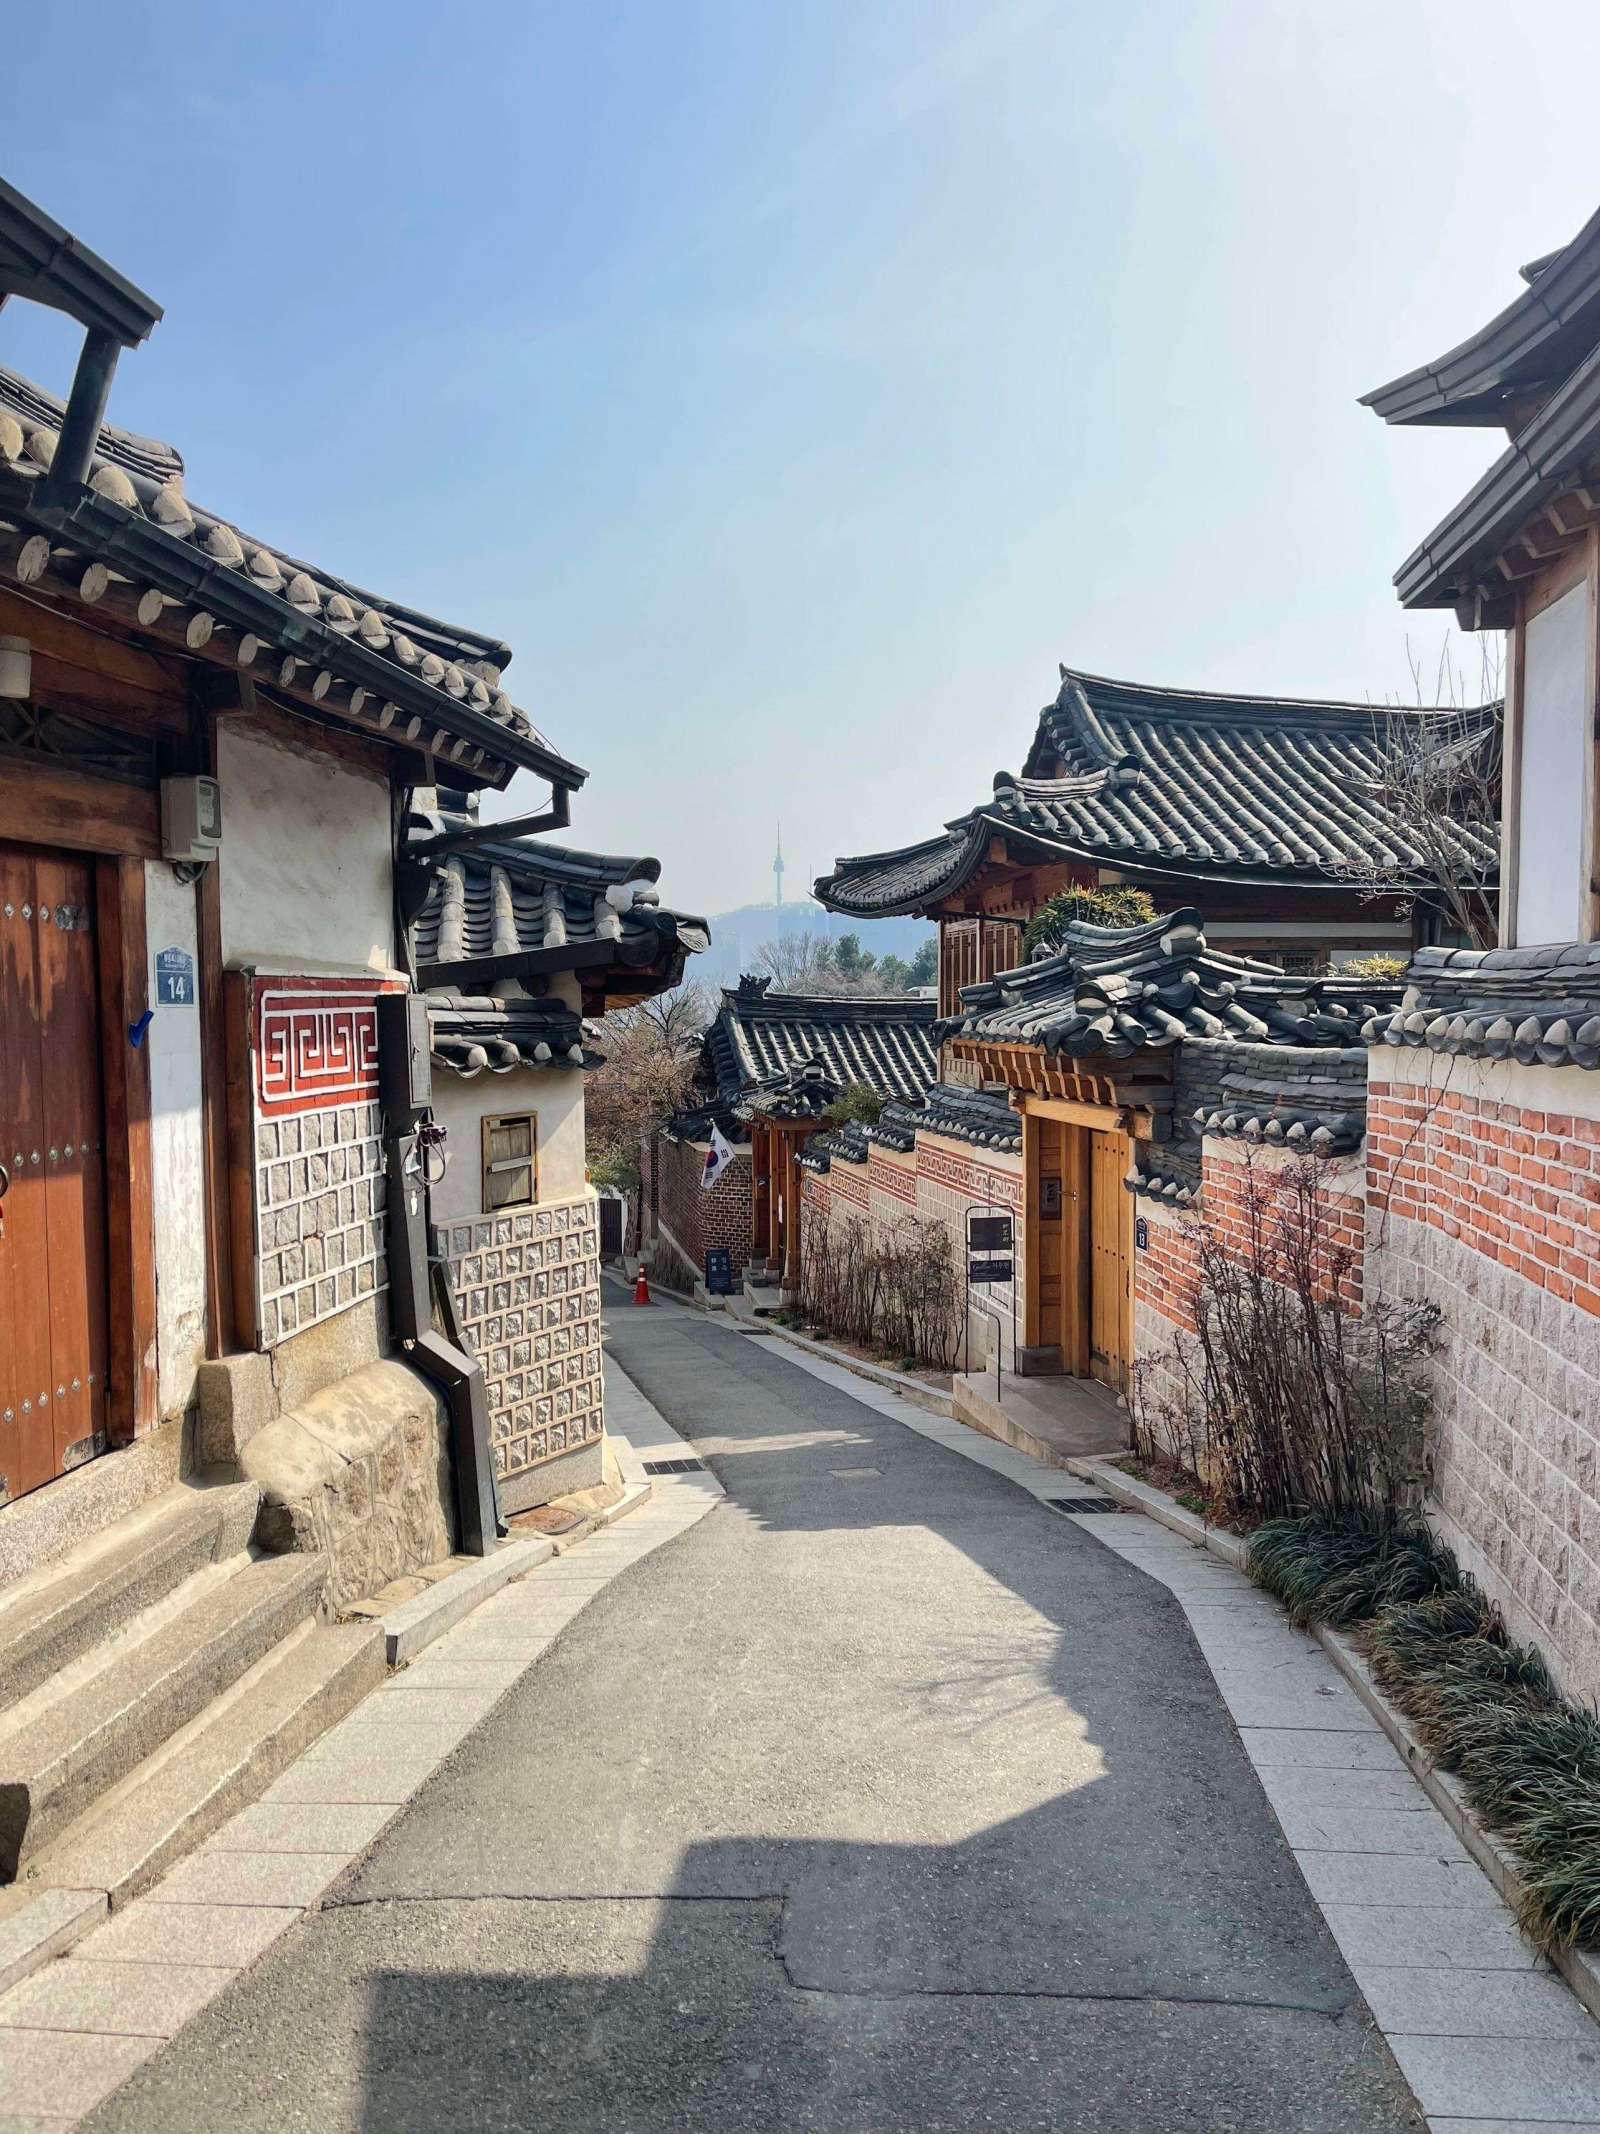 Seoul in March